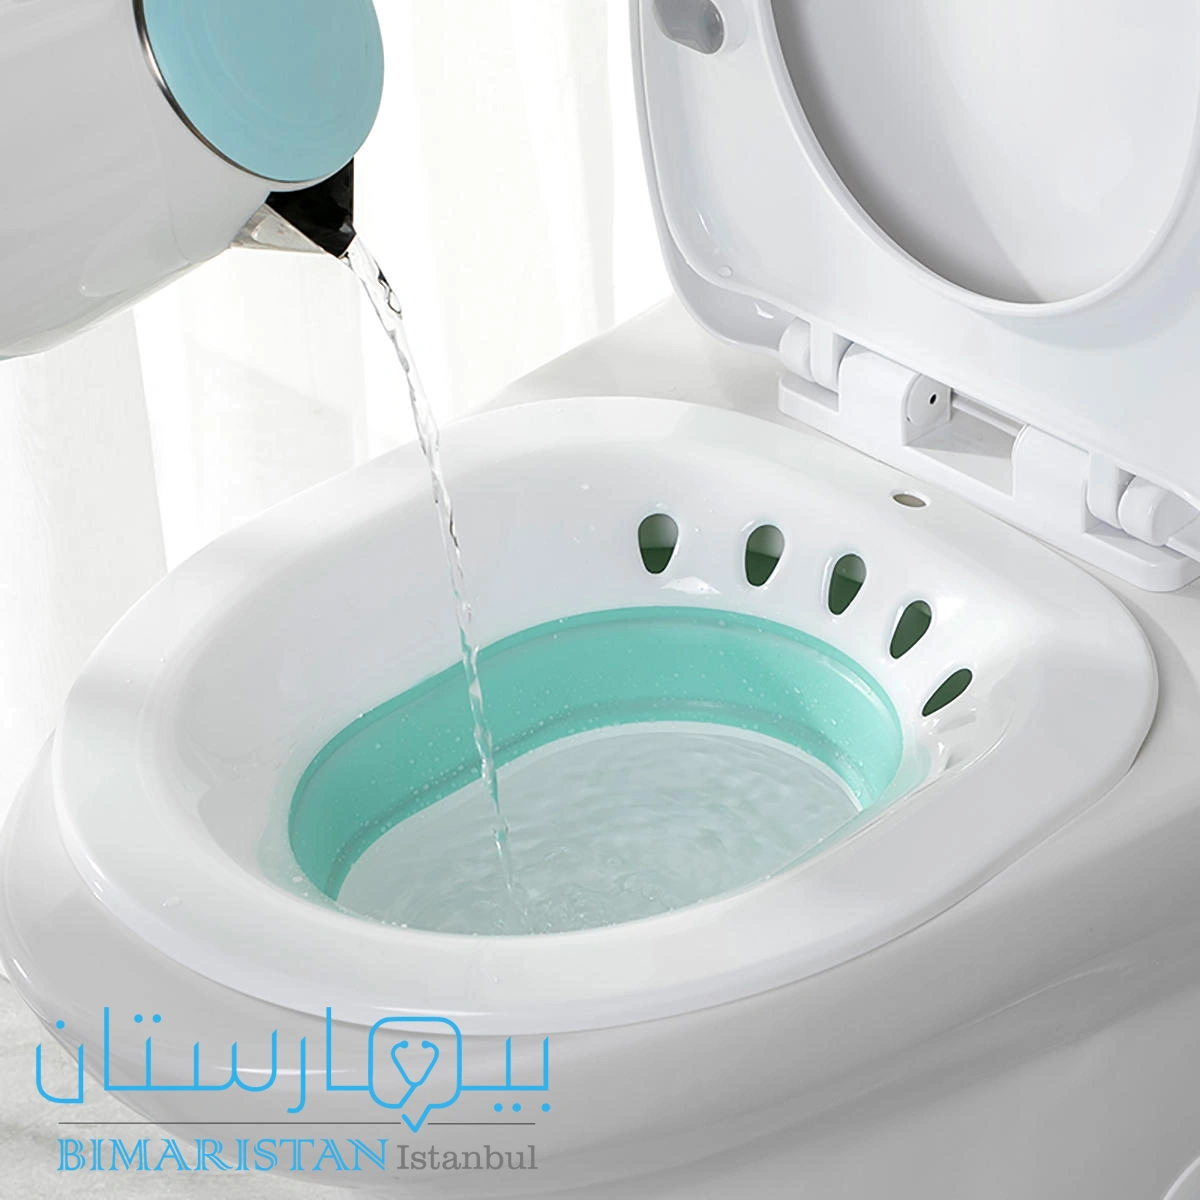 حوض سيتز sitz bath الذي يستخدم في علاج البواسير منزلياً